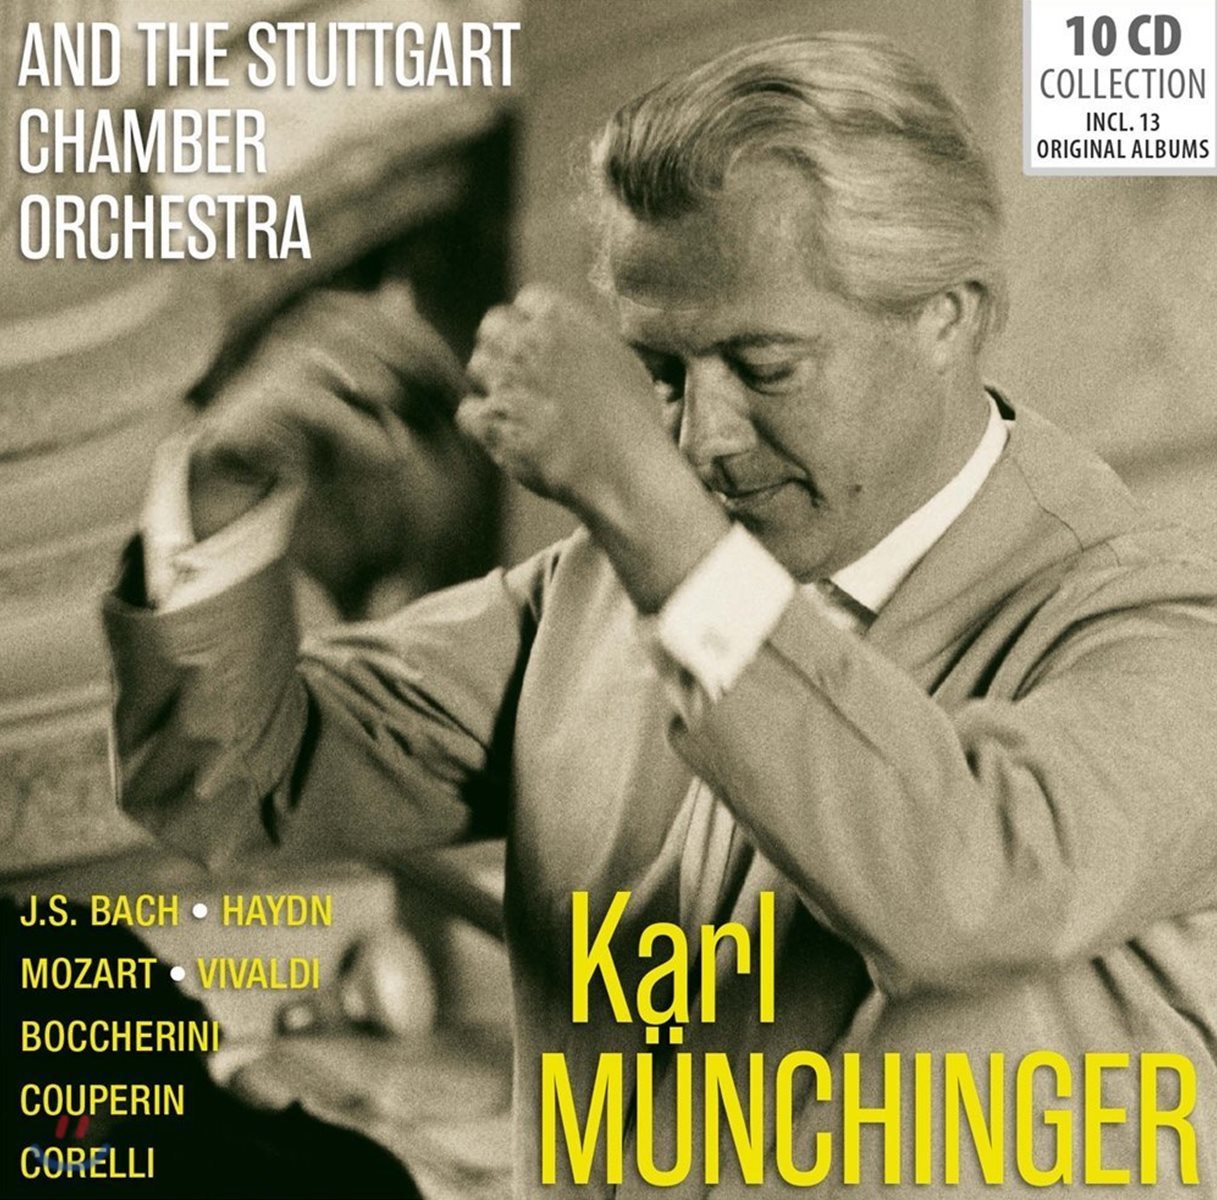 카를 뮌힝거와 슈투트가르트 체임버 오케스트라 - 13 오리지널 앨범 모음 (Karl Munchinger And The Stuttgart Chamber Orchestra)